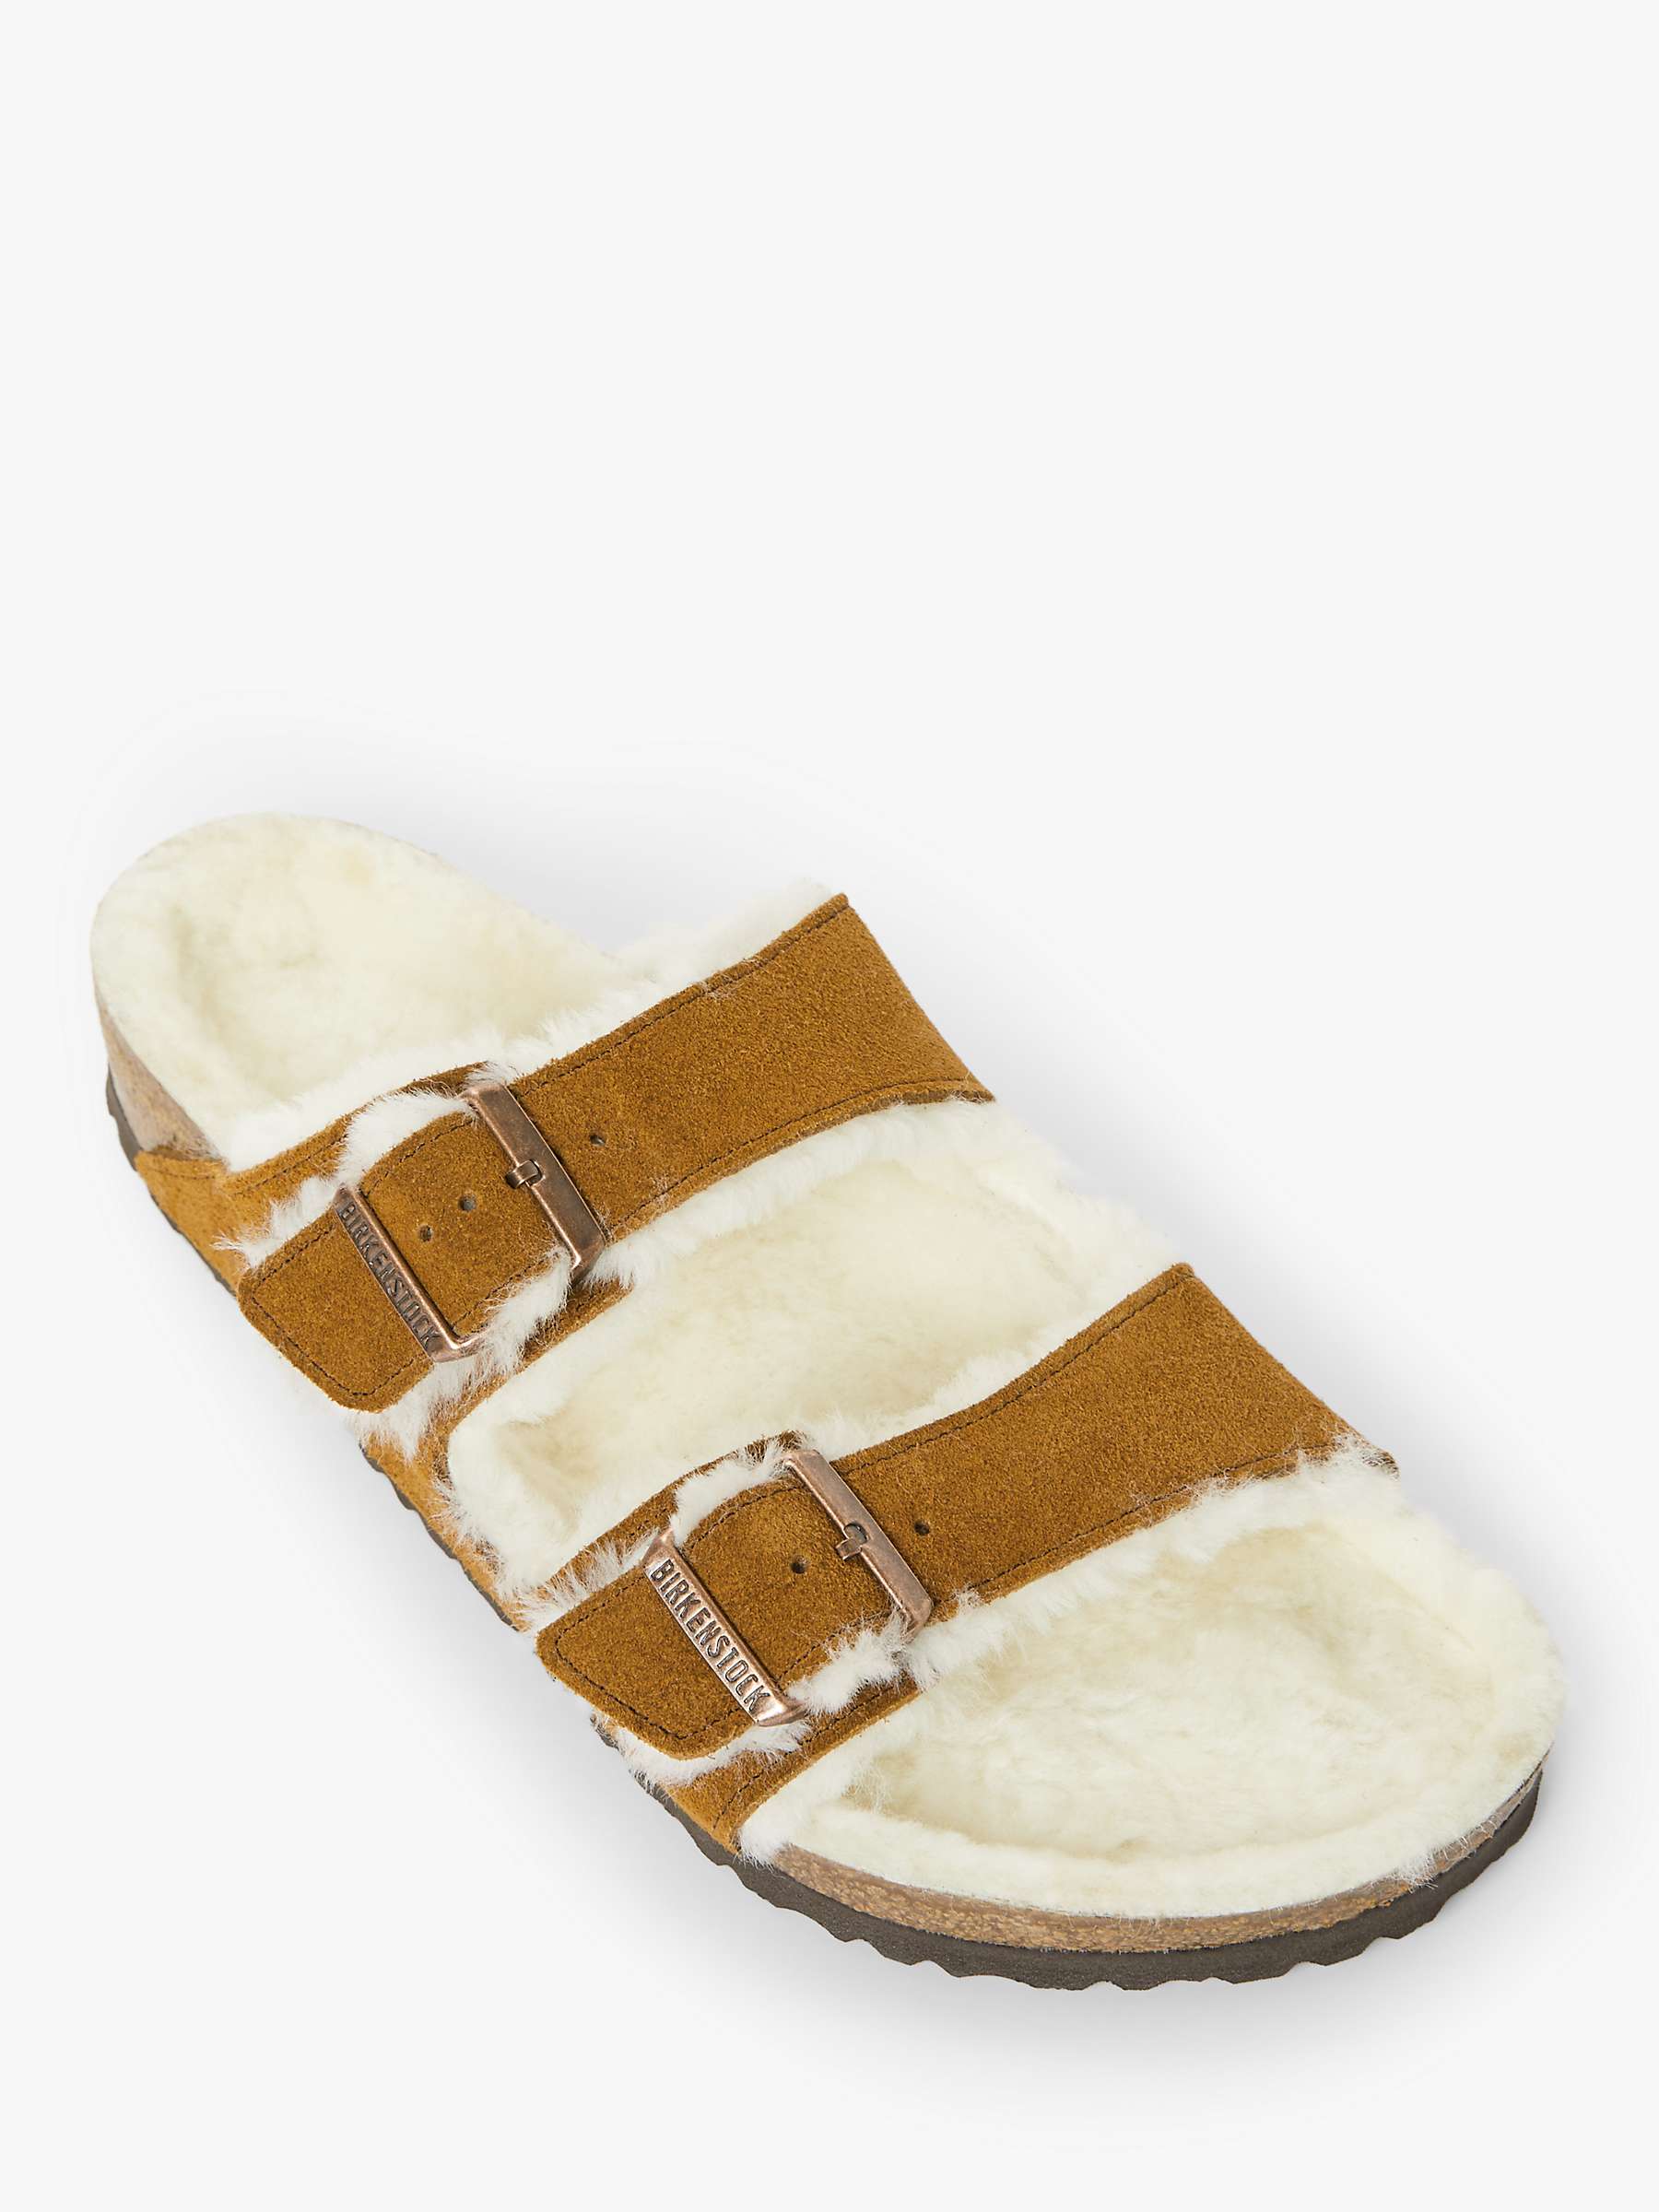 Buy Birkenstock Arizona Suede Sheepkin Sandals Online at johnlewis.com